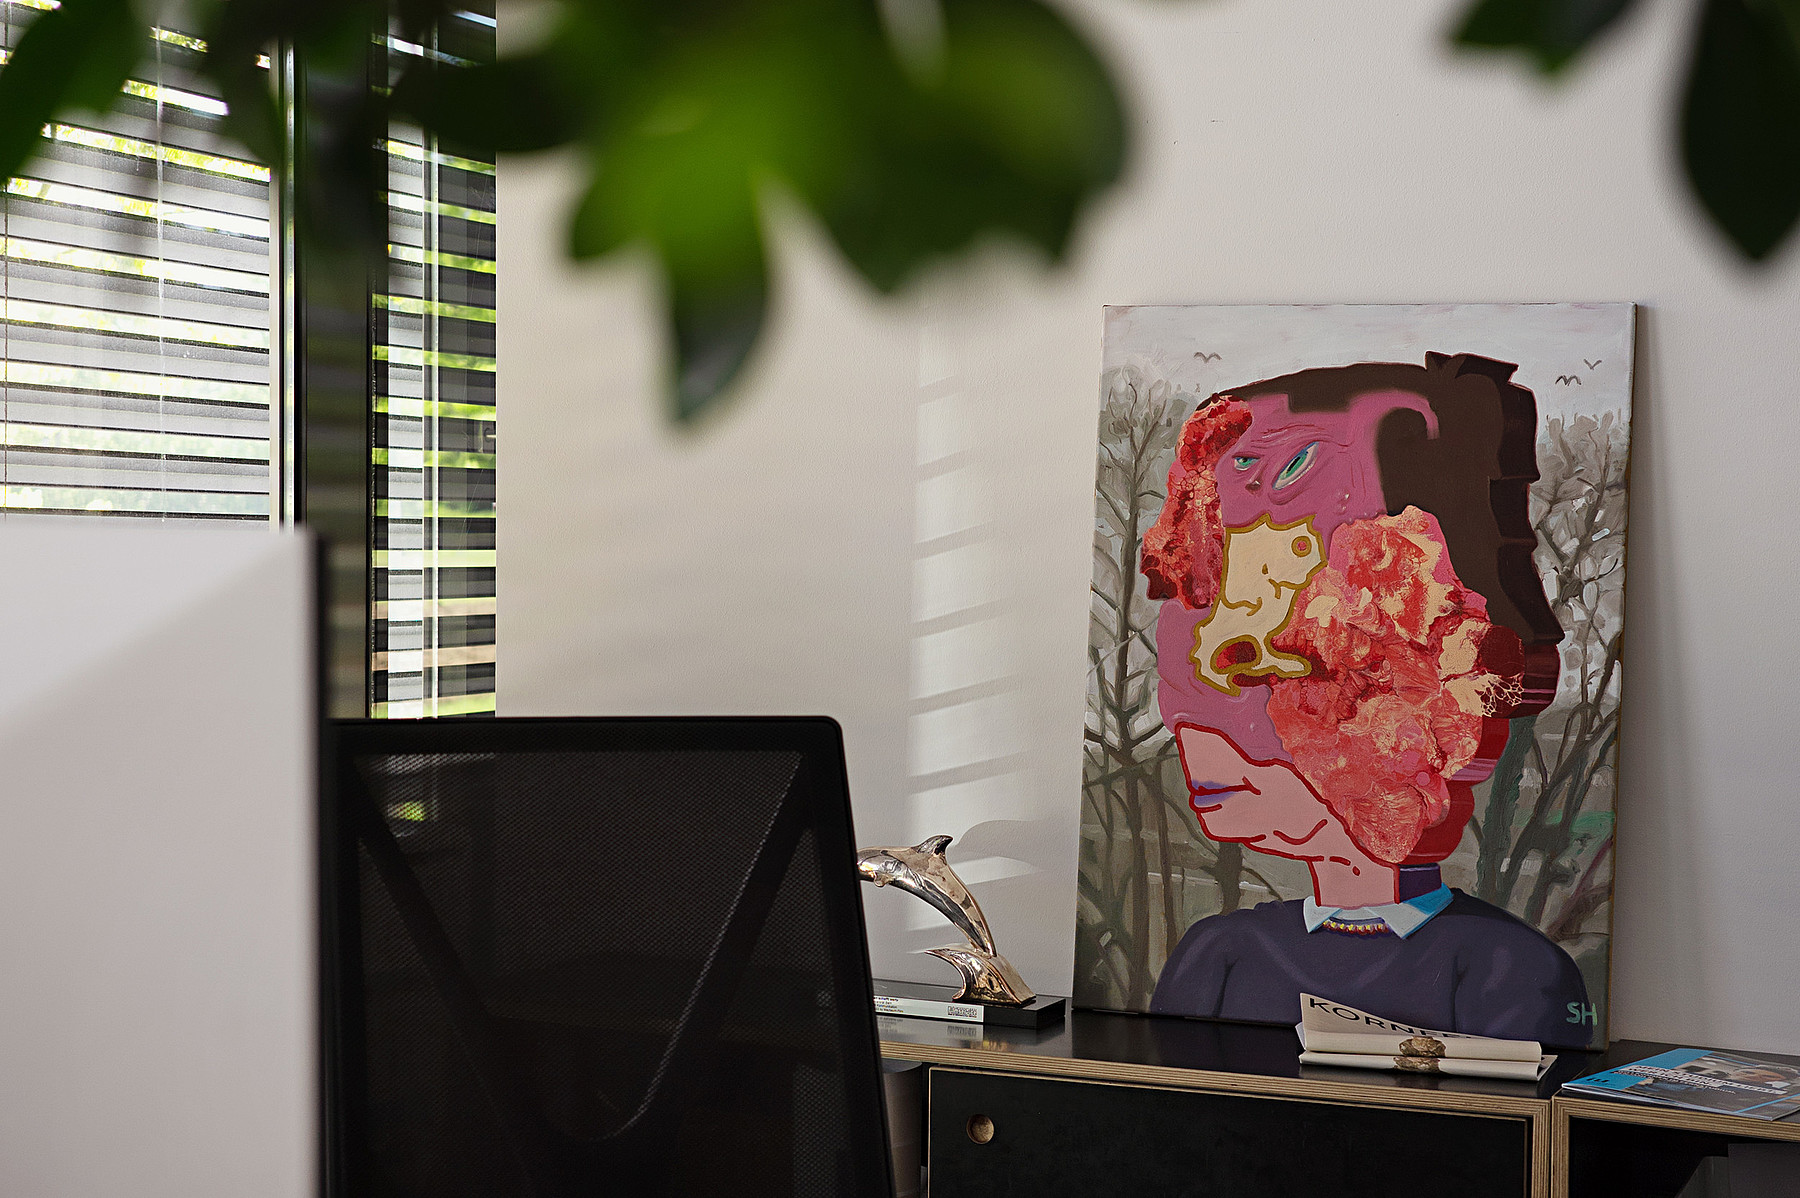 Un portrait coloré, peint de manière abstraite, est adossé au mur d’un bureau.